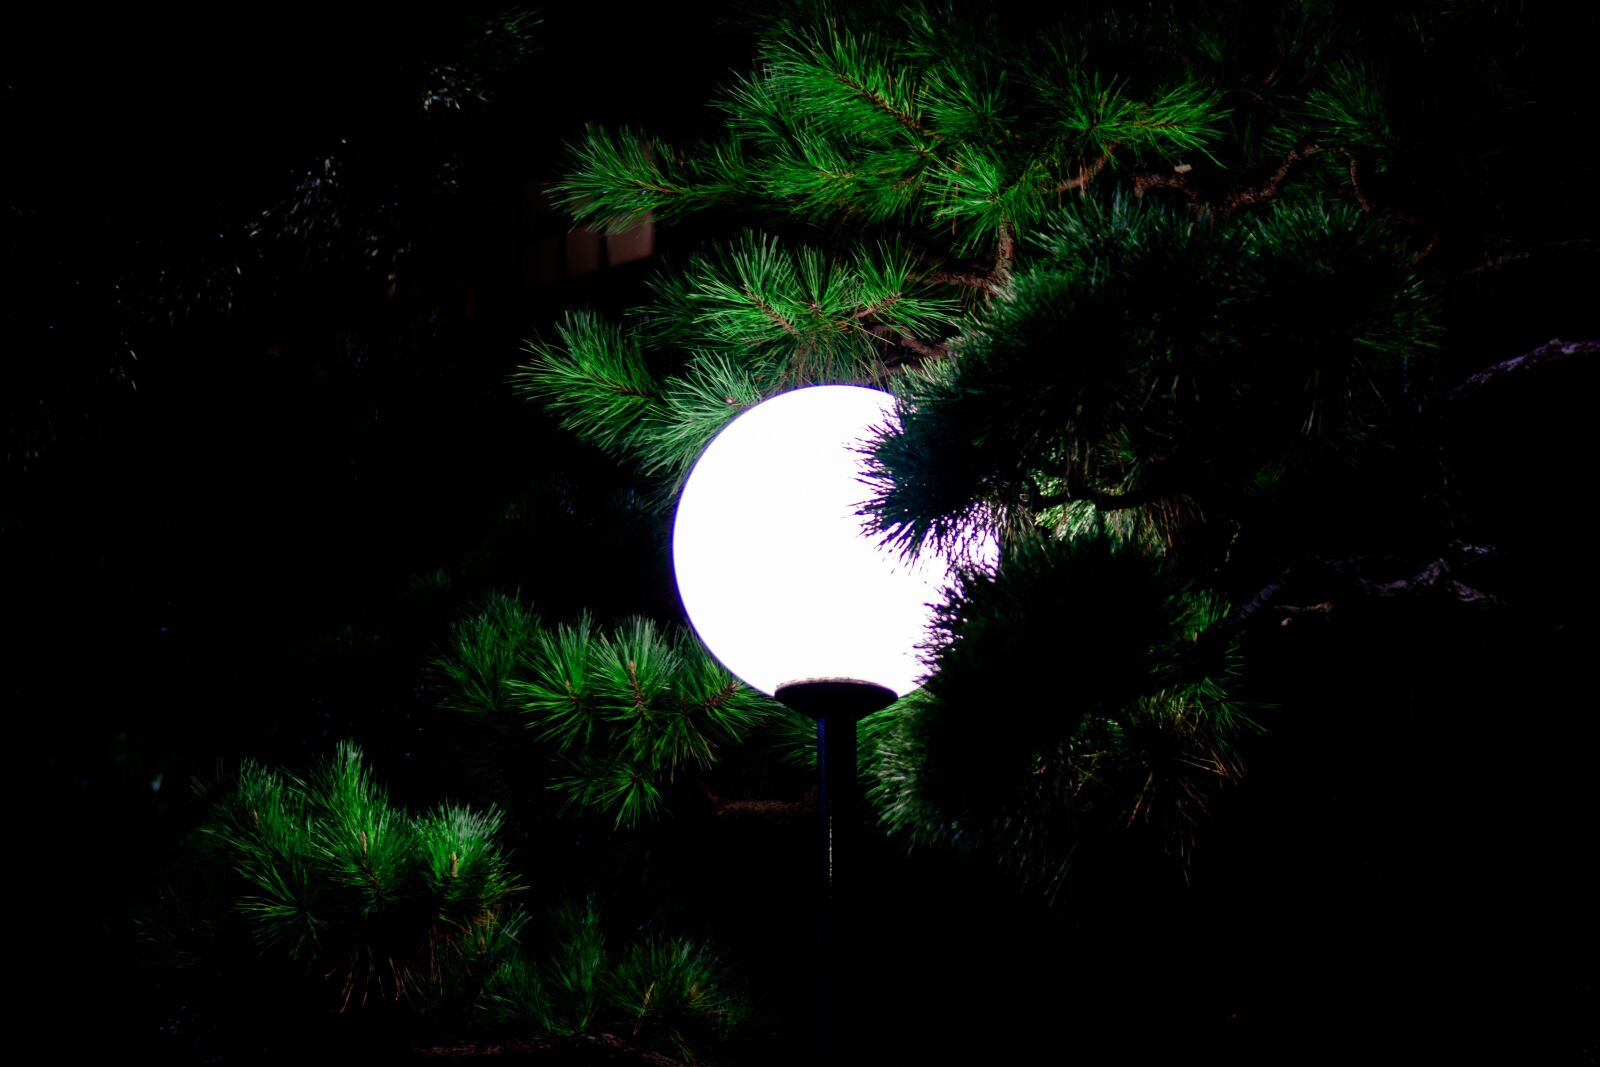 Sony a6000 + Sony E 35mm F1.8 OSS sample photo. Moonlight, light, full moon photography